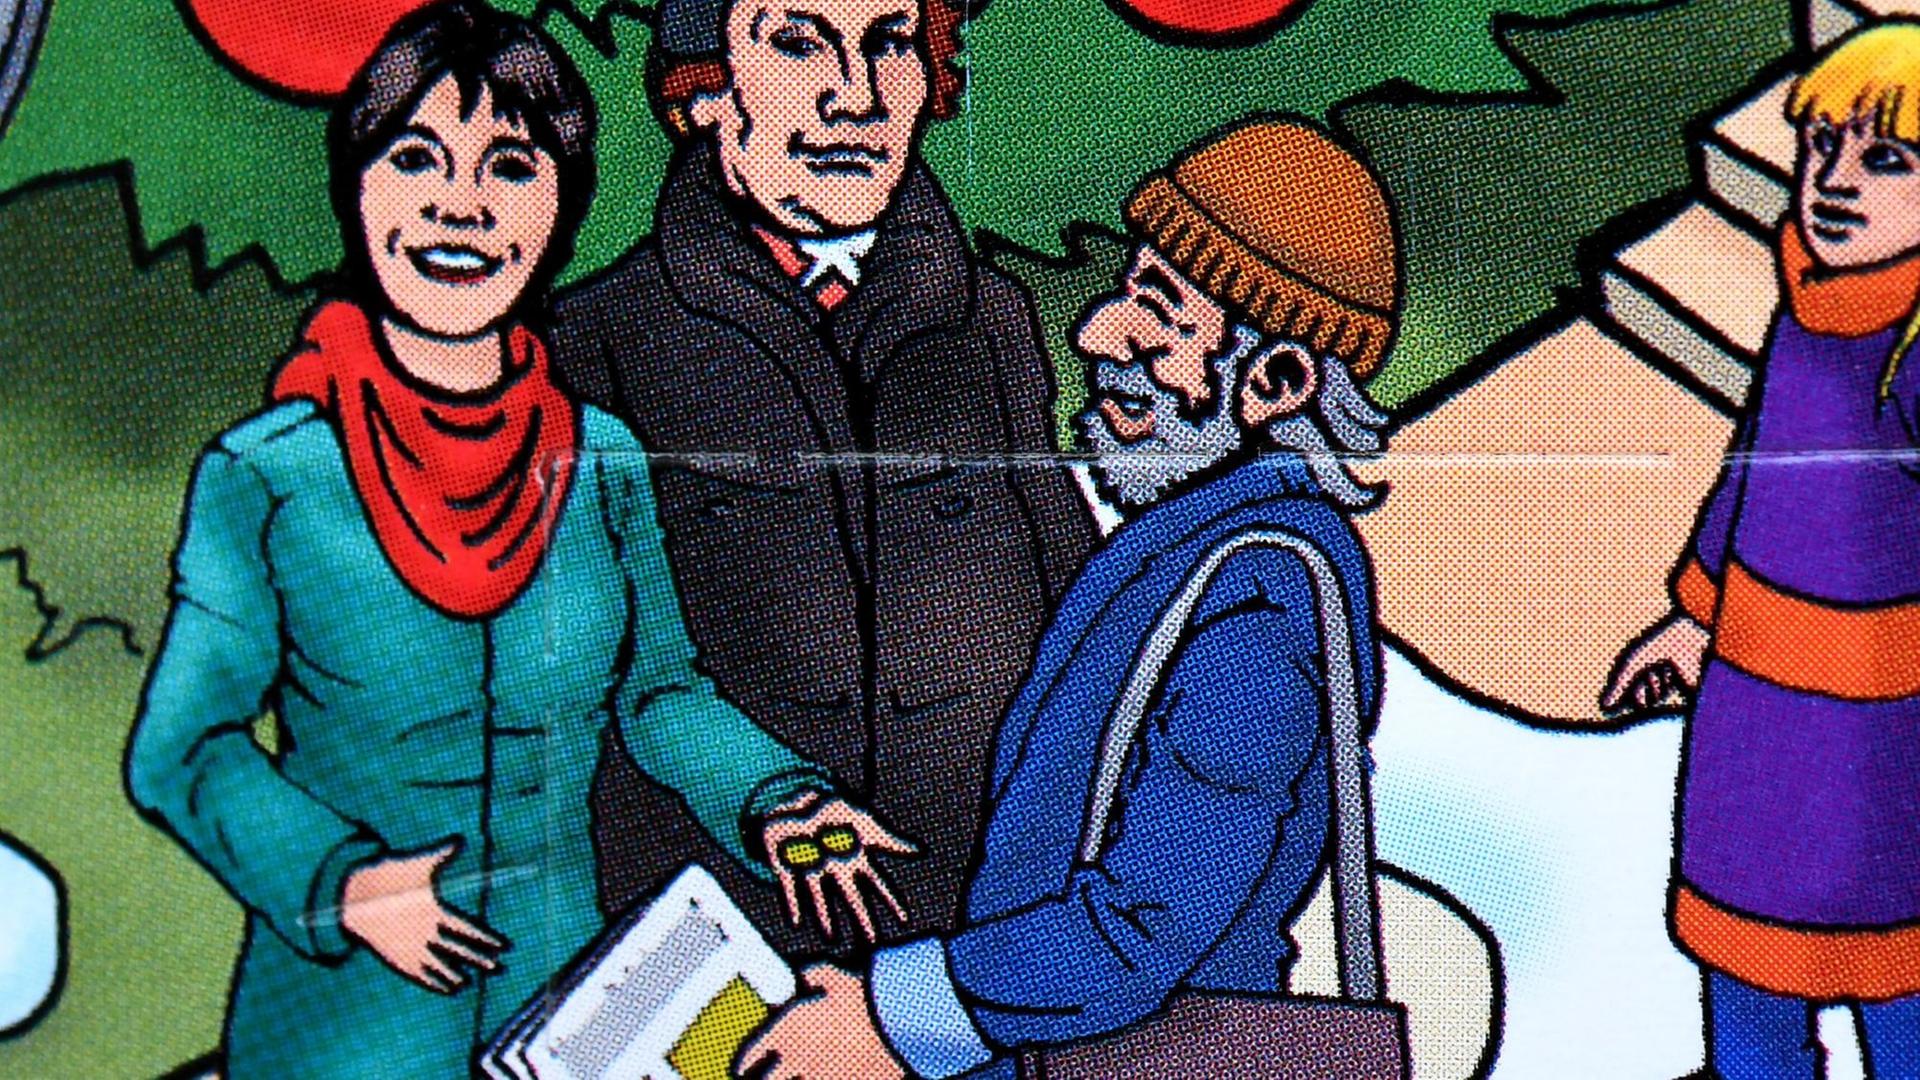 Die Theologin Margot Käßmann sowie Martin Luther und ein Straßenmagazinverkäufer sind auf einem Adventskalender abgebildet.